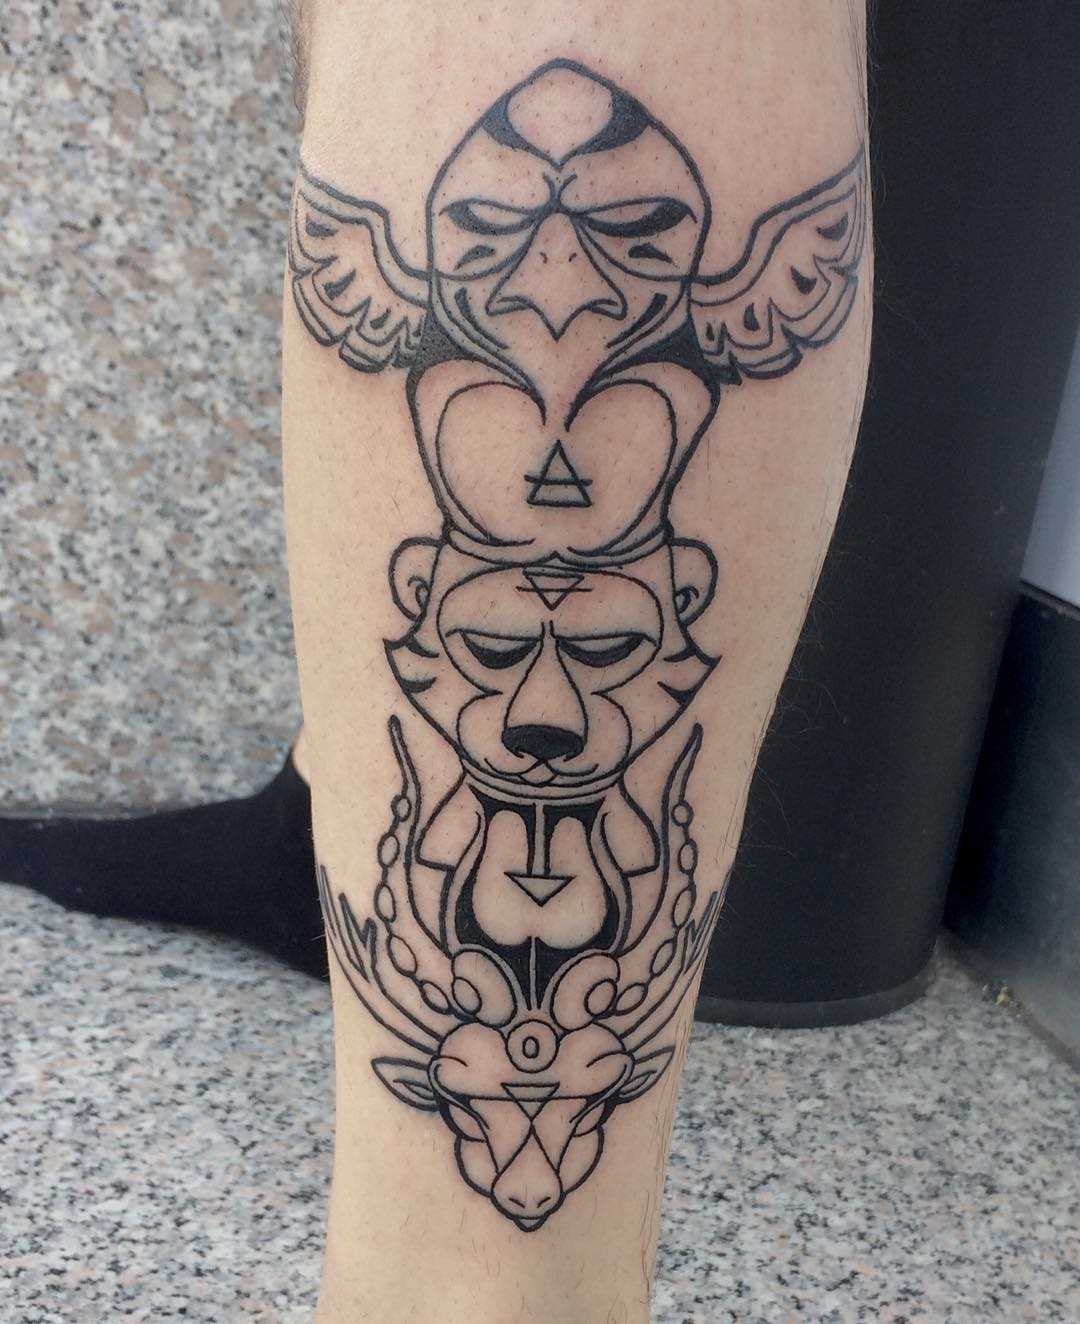 Tatuagem de totem animal sobre a perna de um cara